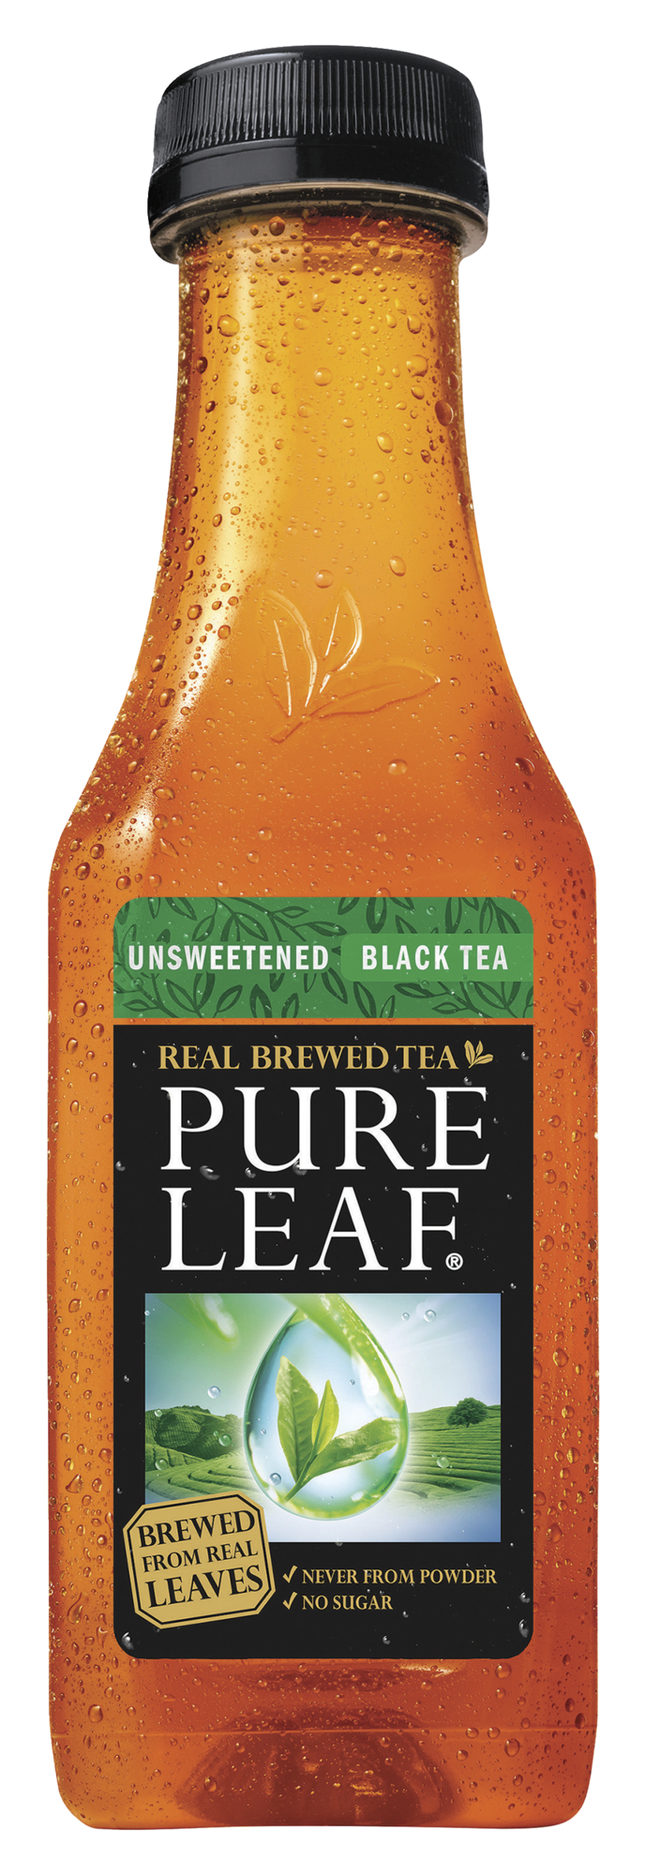 Pepsi Pure Leaf Iced Tea